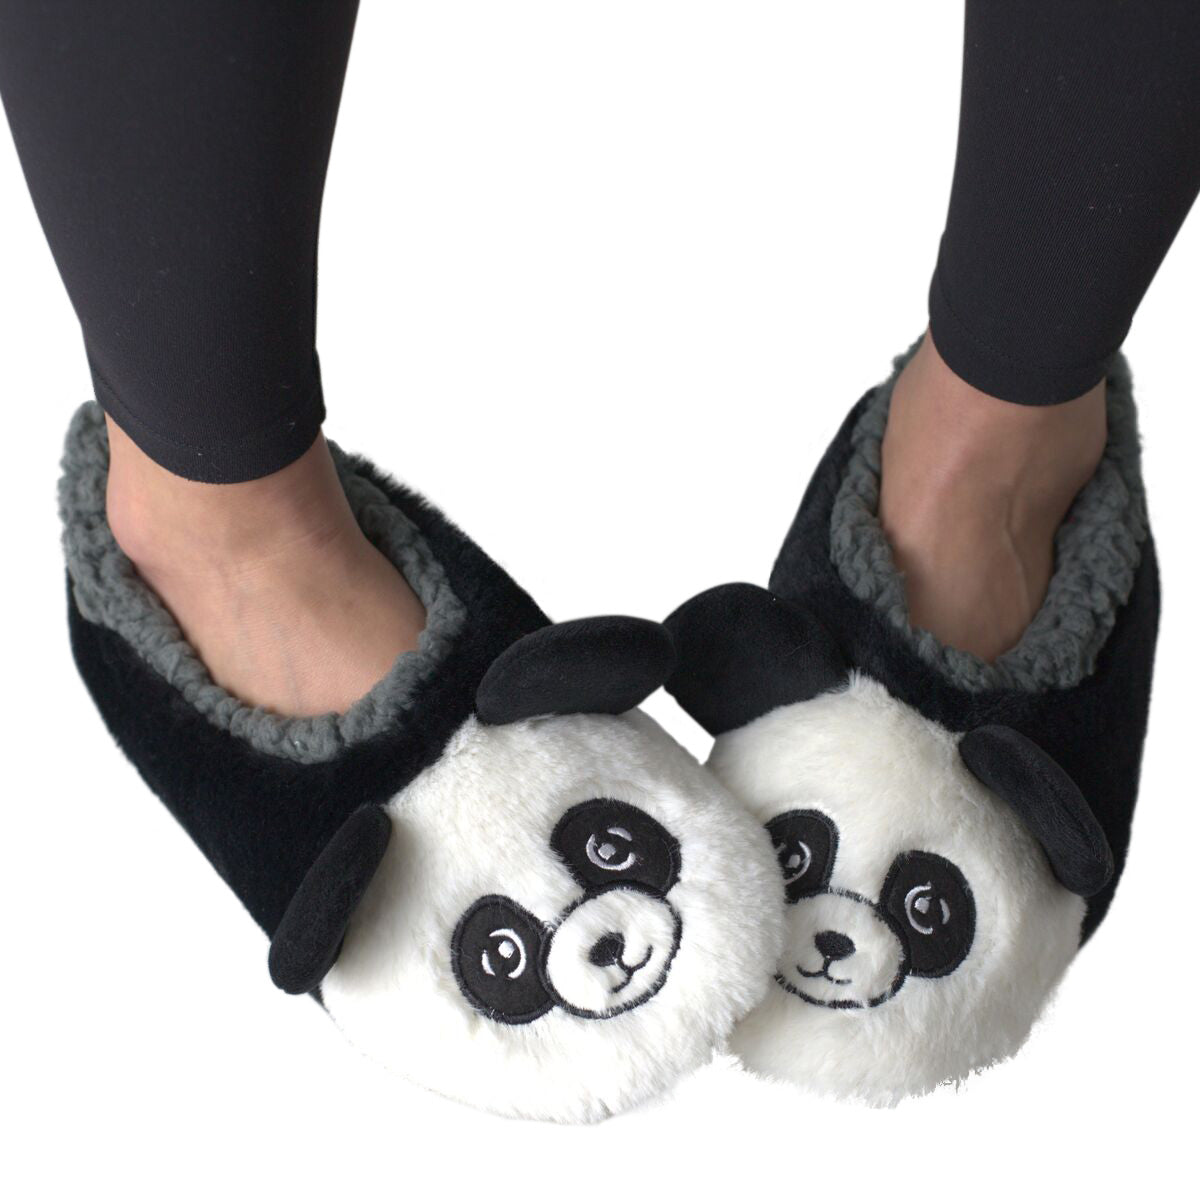 Pantuflas mullidas de panda - 0